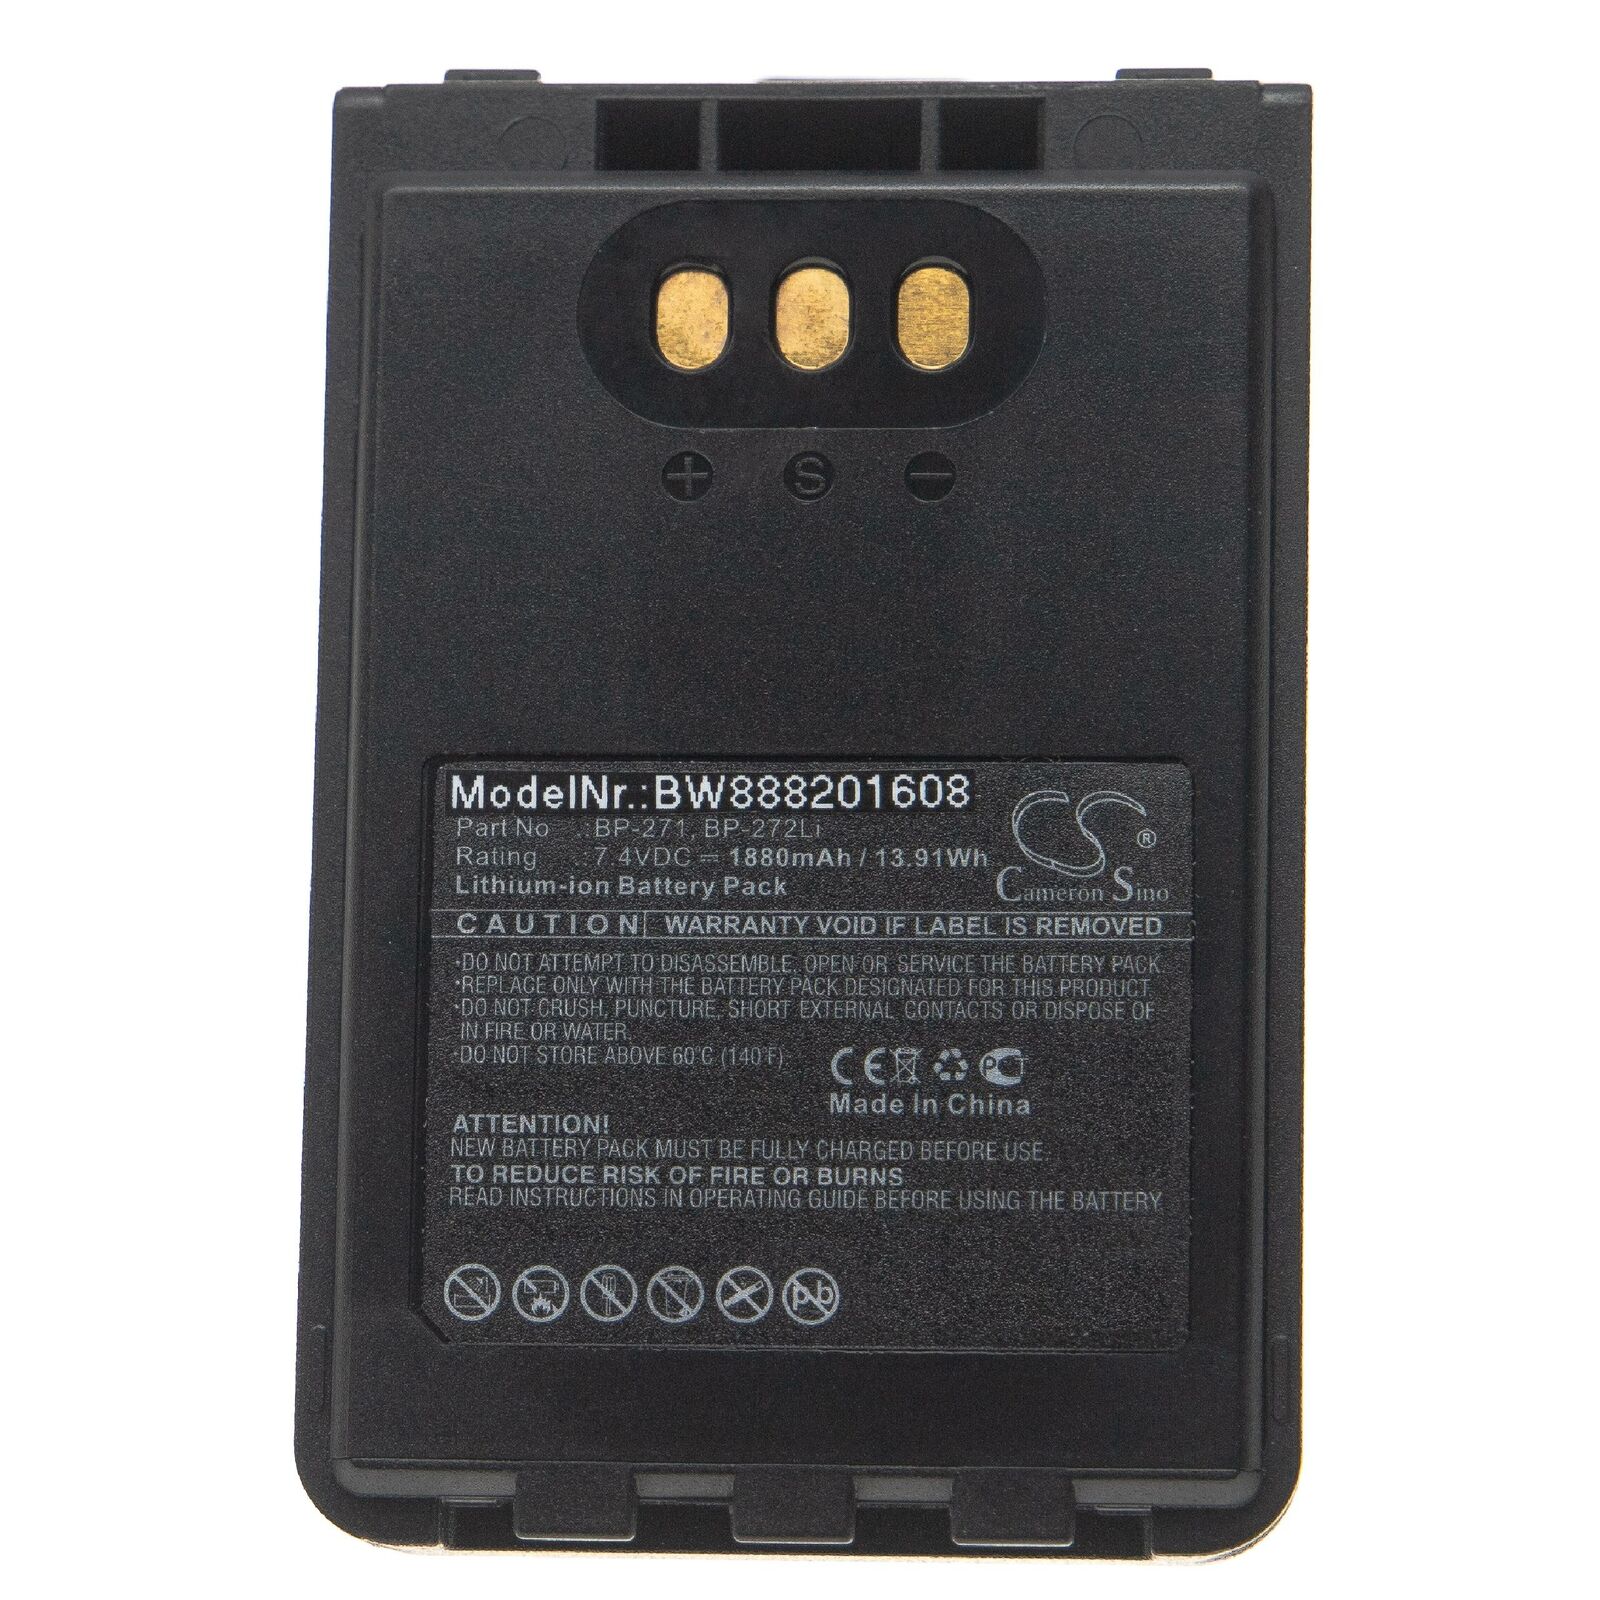 ICOM ID-31A, ID-31E, ID-51A, ID-51E, BP-271, BP-272Li compatible Battery